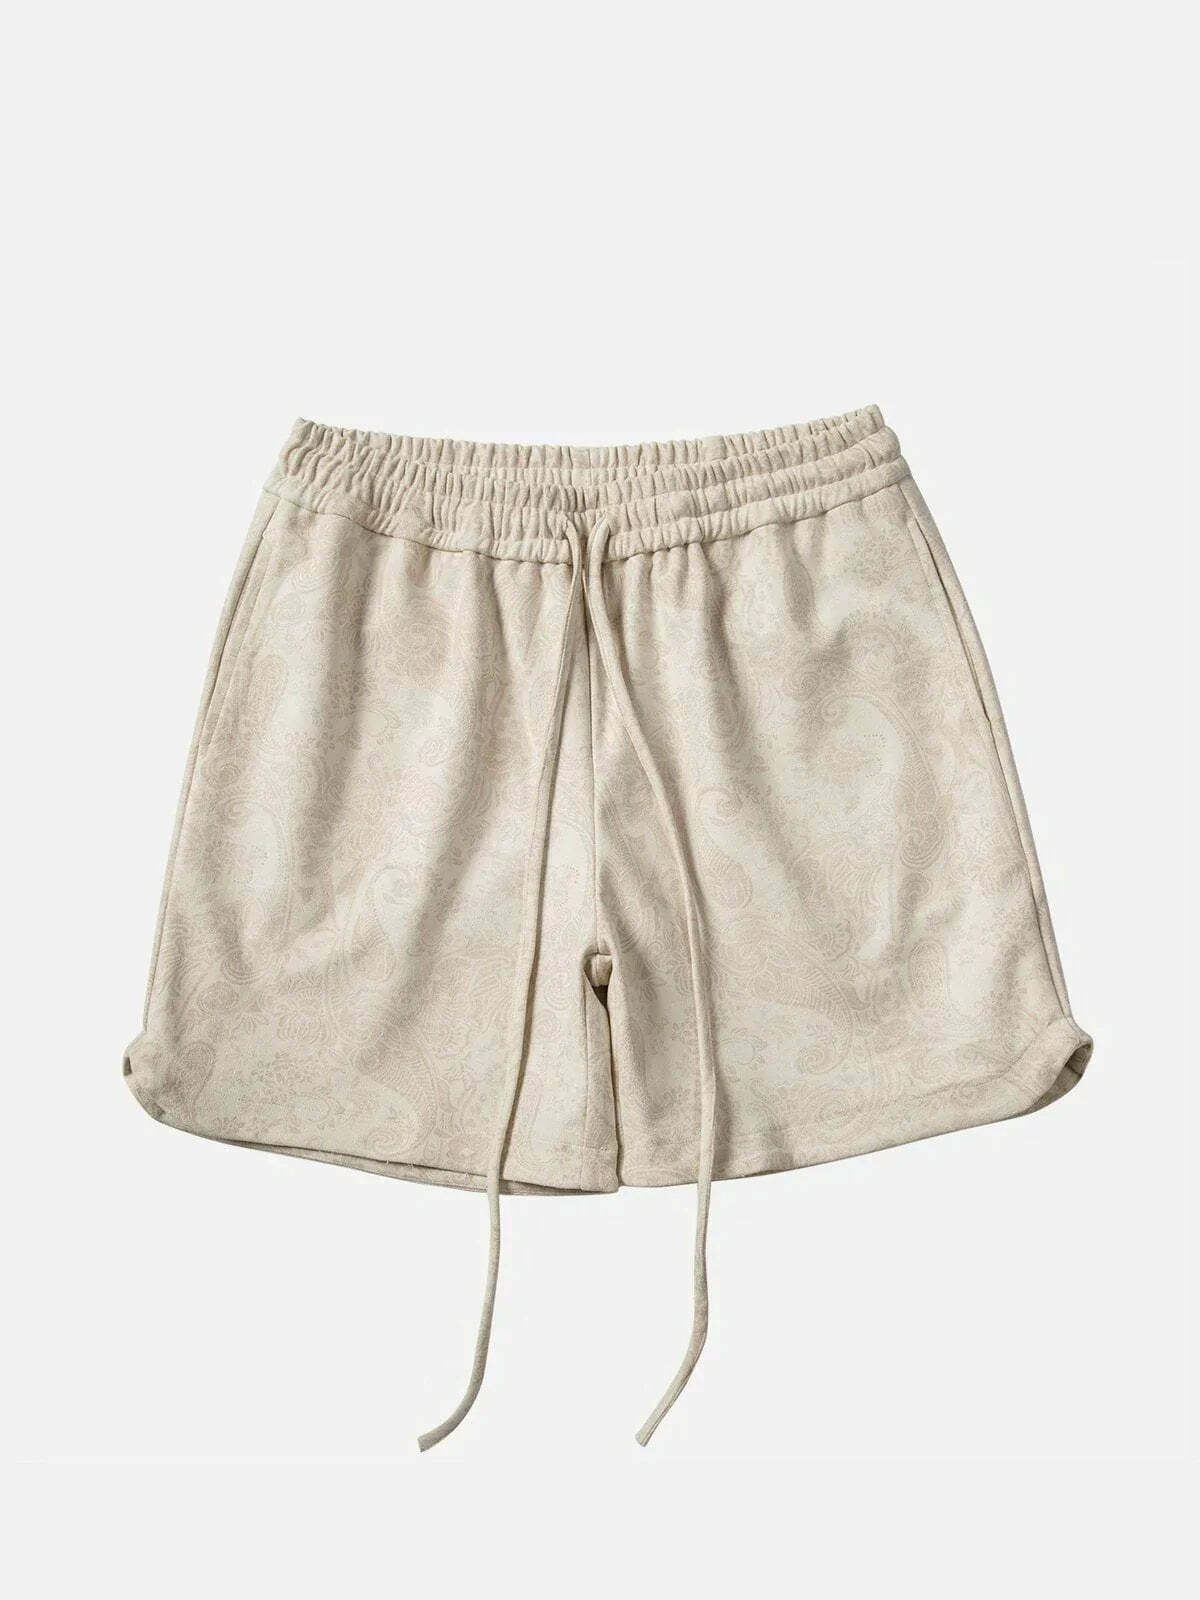 y2k suede bandana shorts edgy streetwear essential 5810